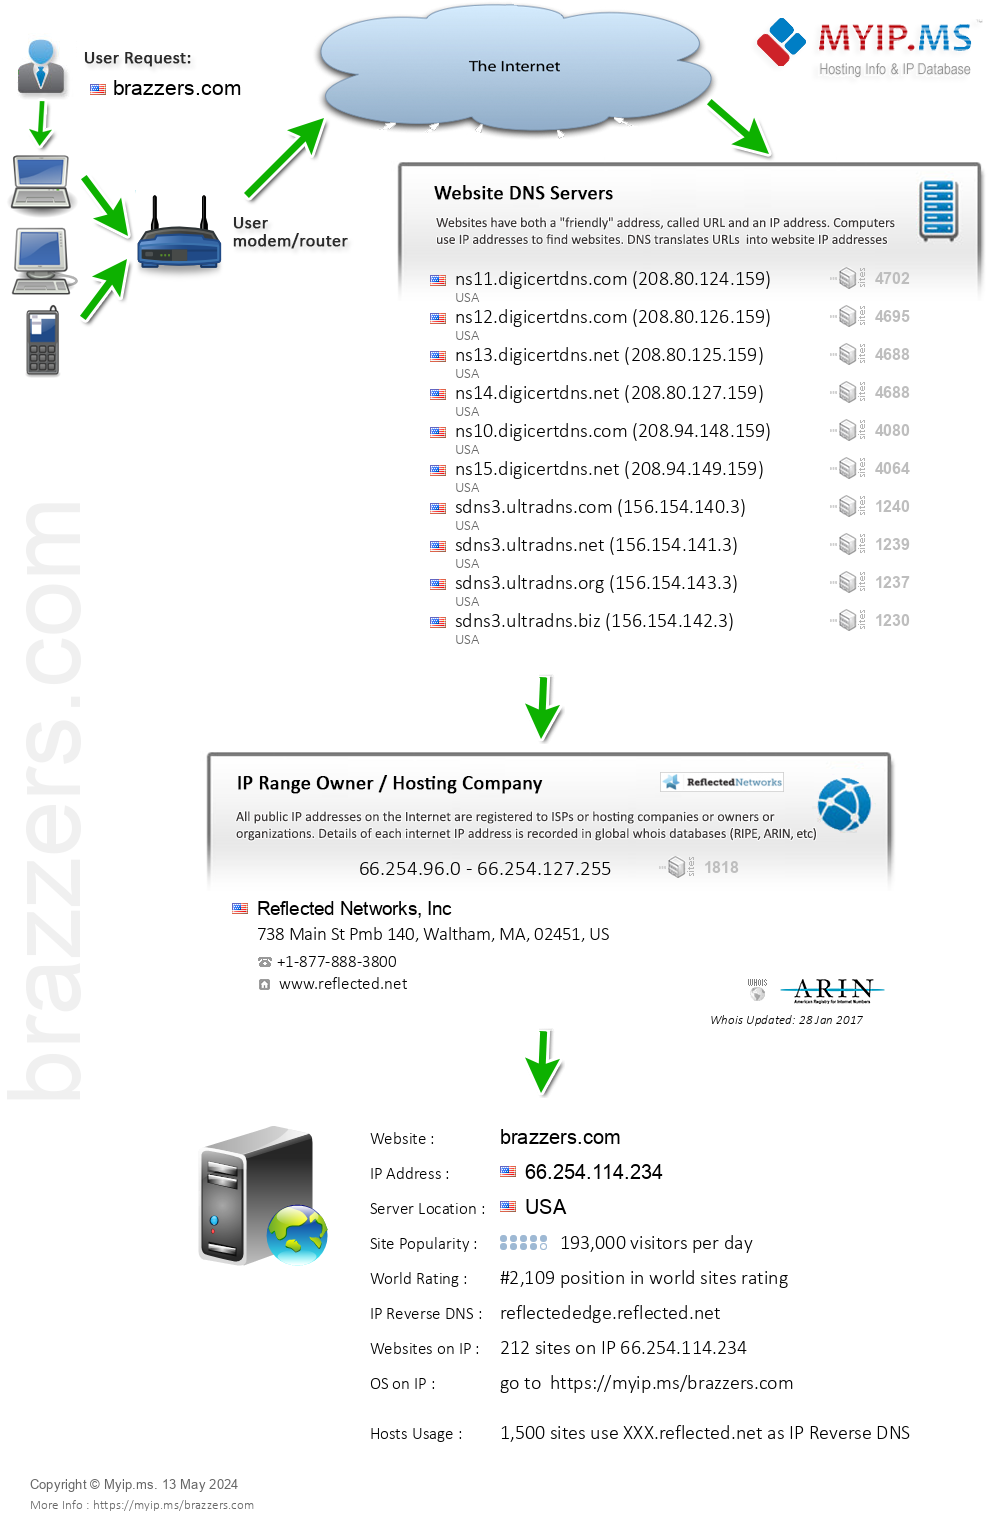 Brazzers.com - Website Hosting Visual IP Diagram